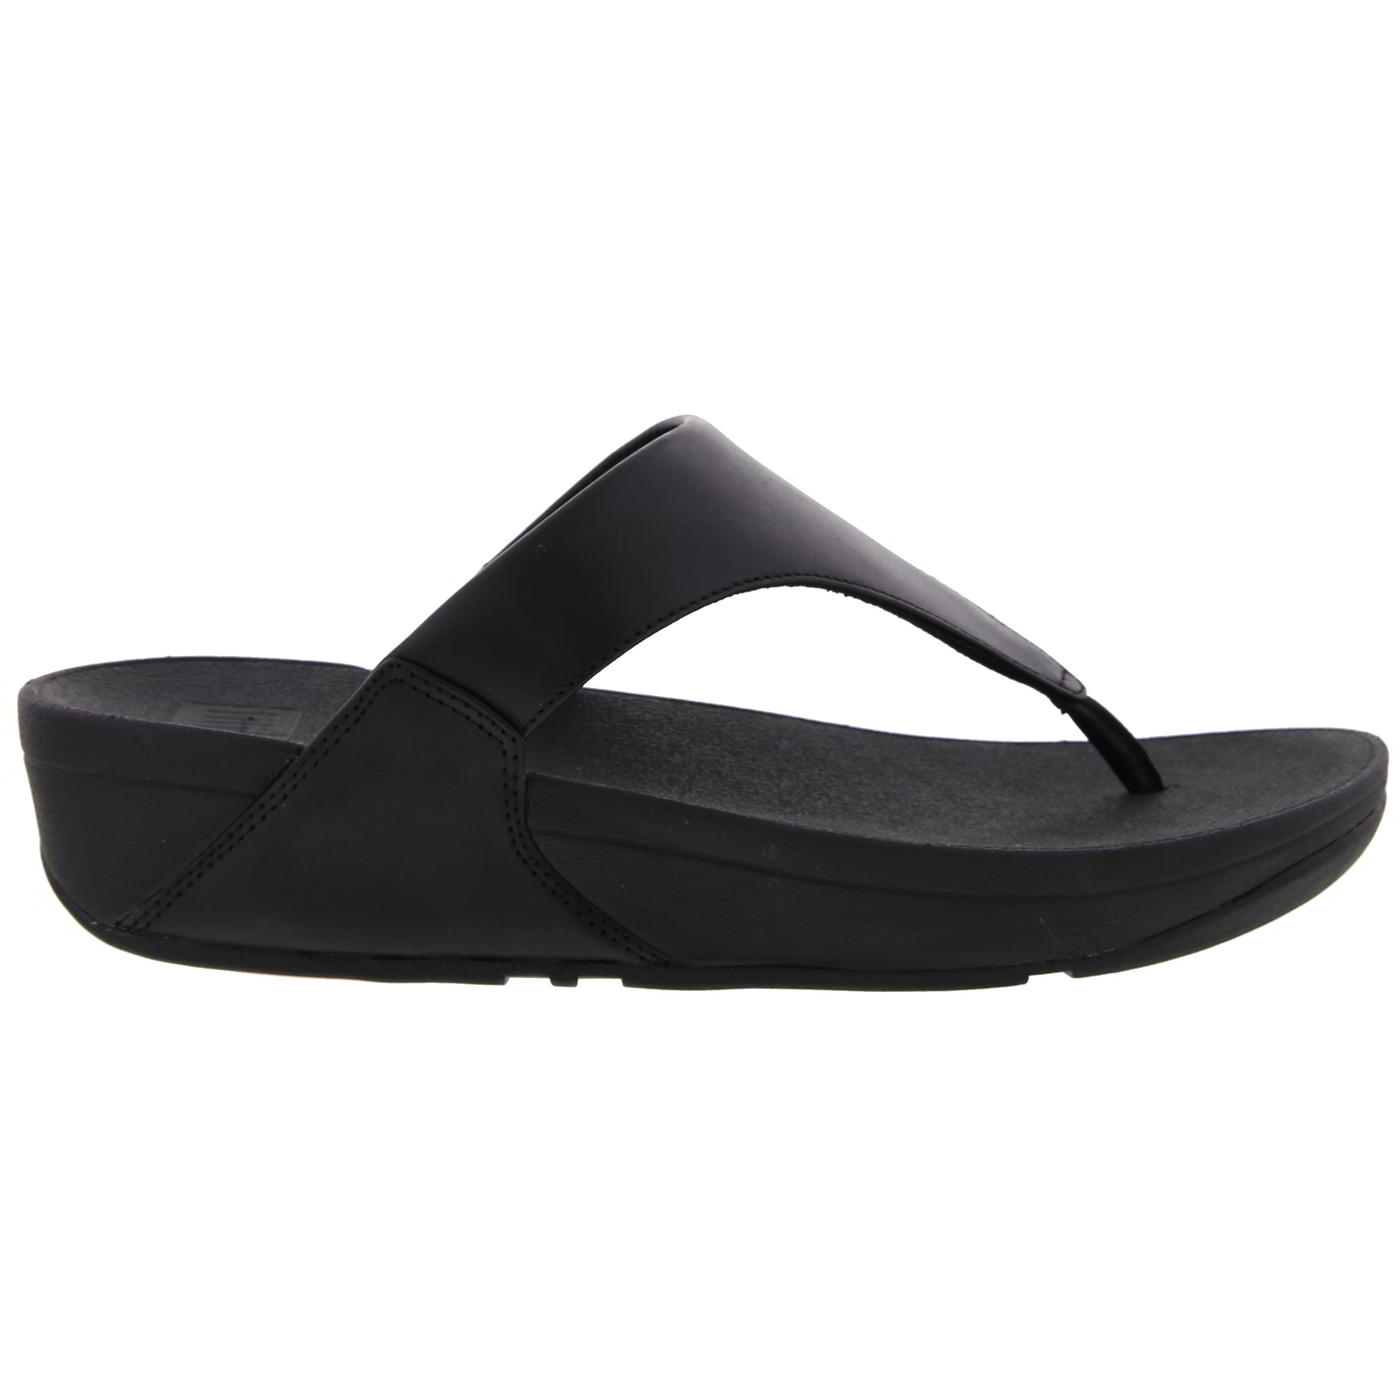 FitFlop Women's Lulu Toe Post Leather Flip Flop Sandals - UK 7